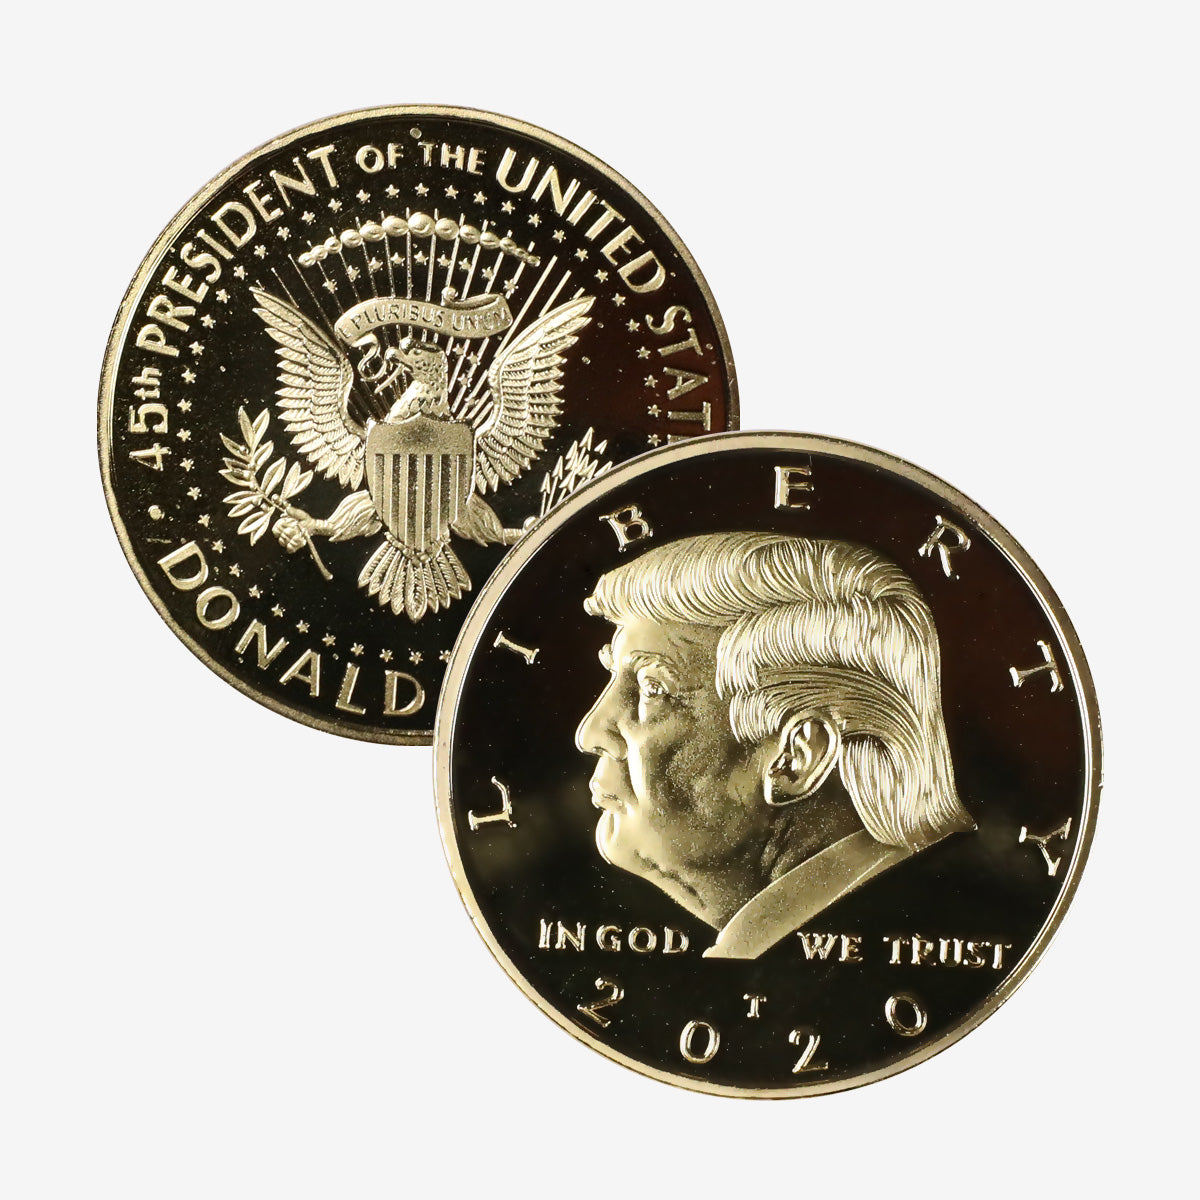 2017 President Trump Inaugural Eagle Commemorative Coin